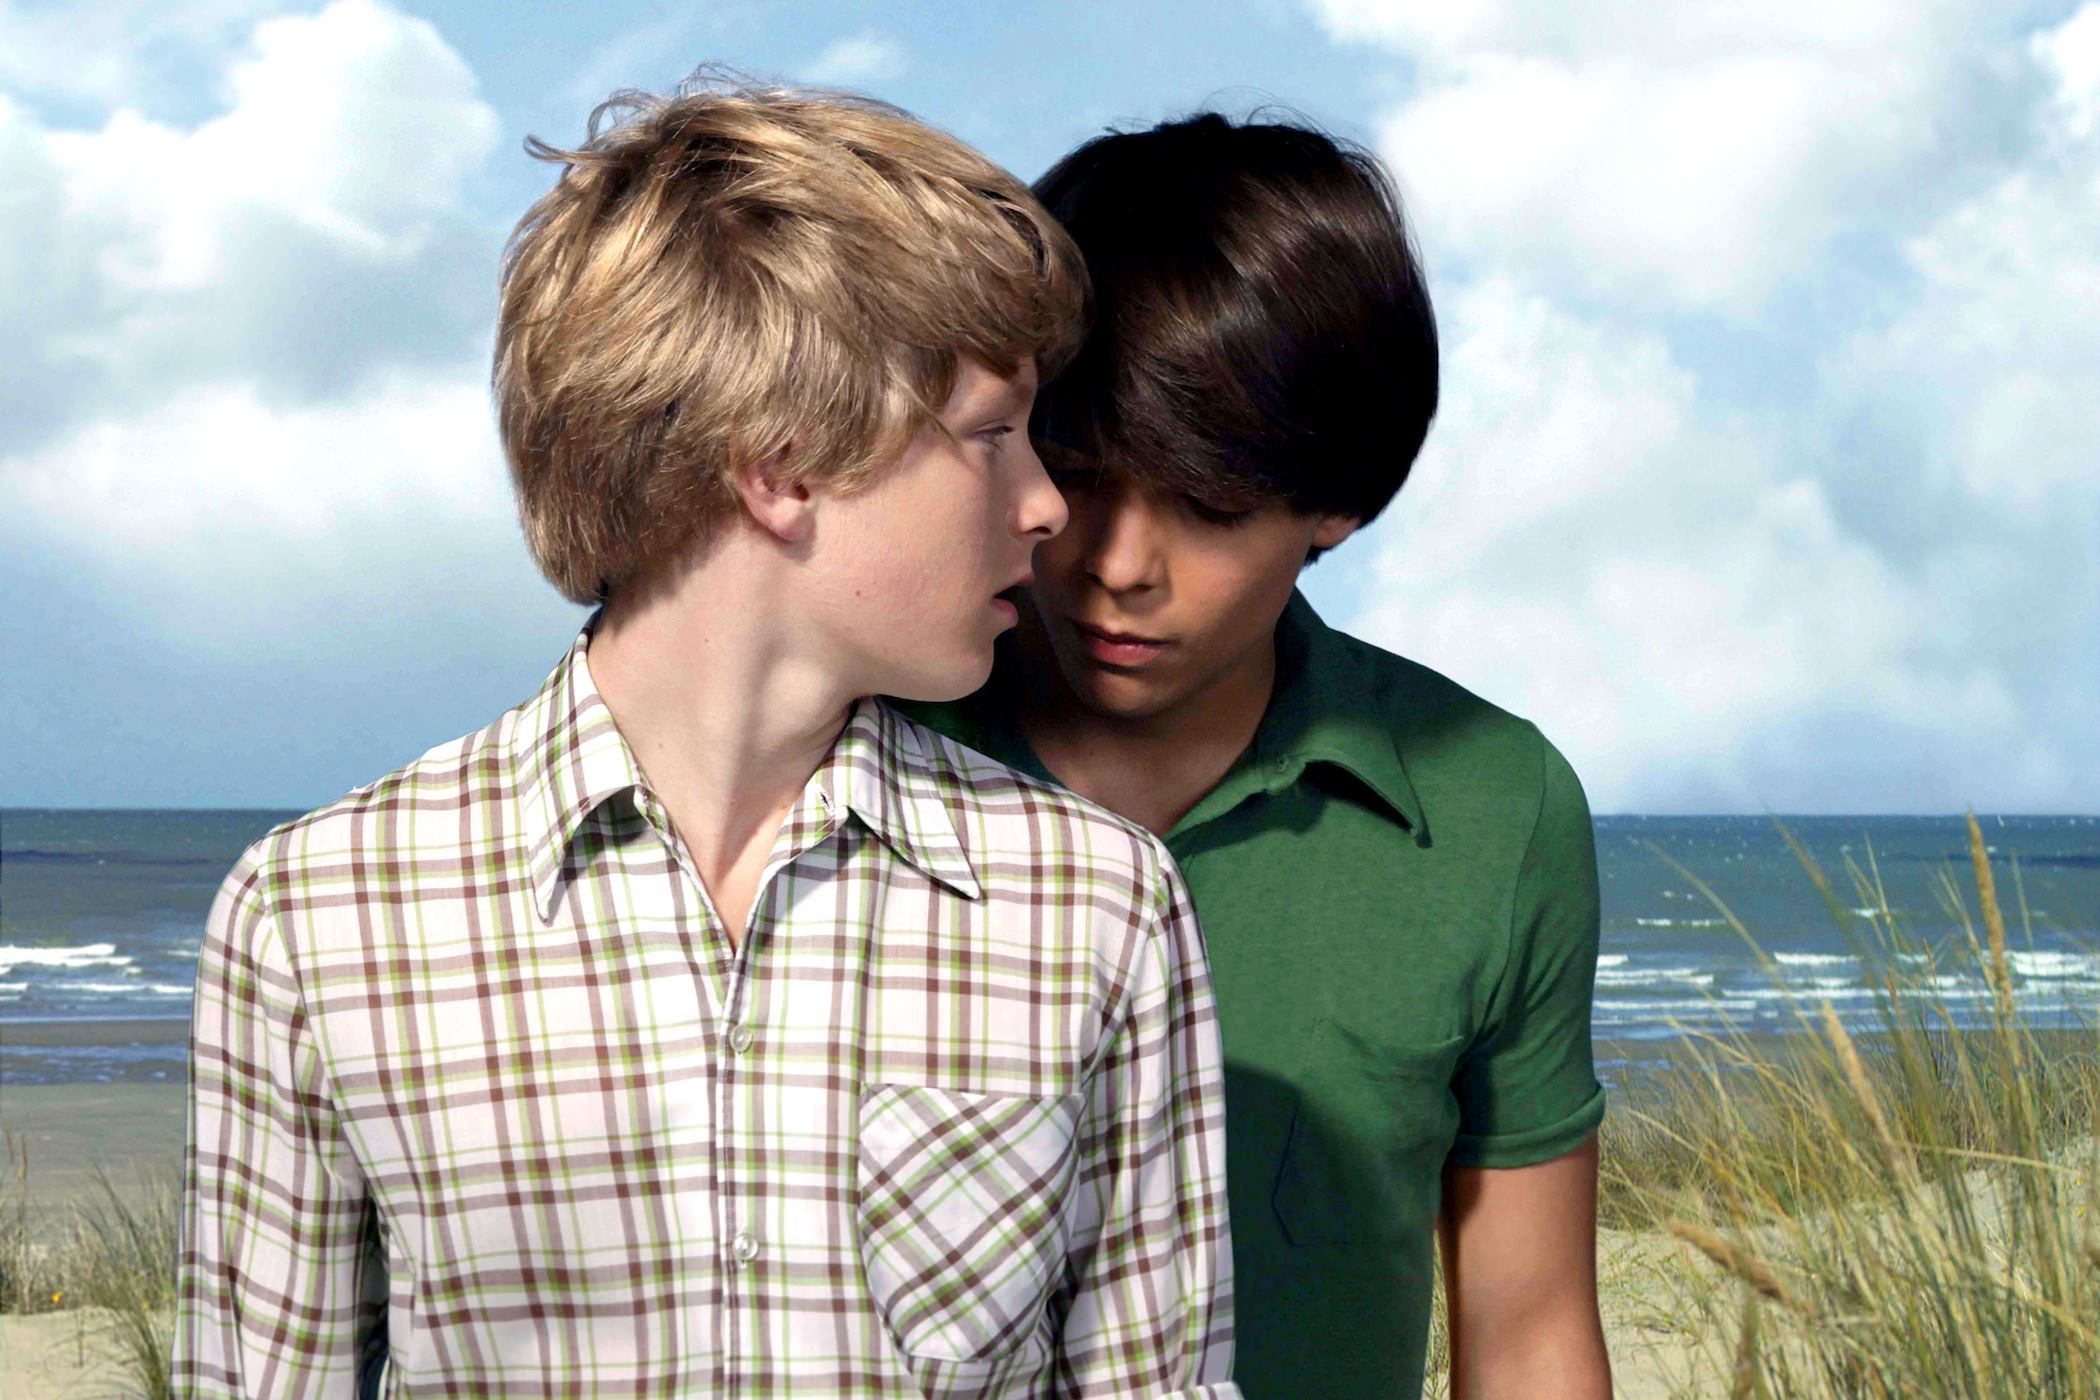 Young boys 2. Йелле Флоризон Северное море Техас. Северное море Техас 2011 поцелуй. Йелле Флоризон и Матиас Вергельс.